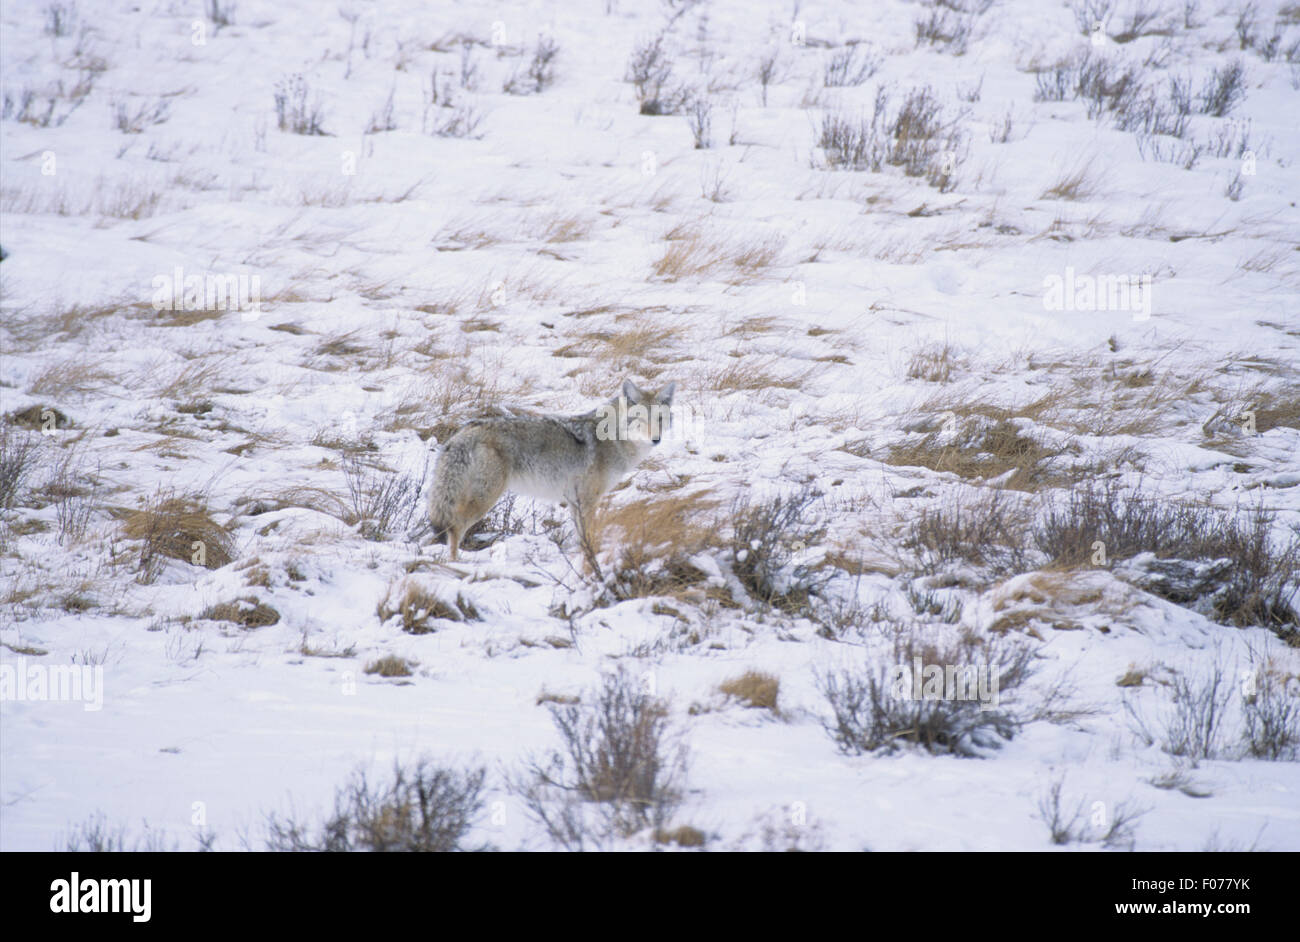 Coyote prises dans le profil à la caméra à l'arrière du châssis en petit comité dans la neige et la glace Banque D'Images